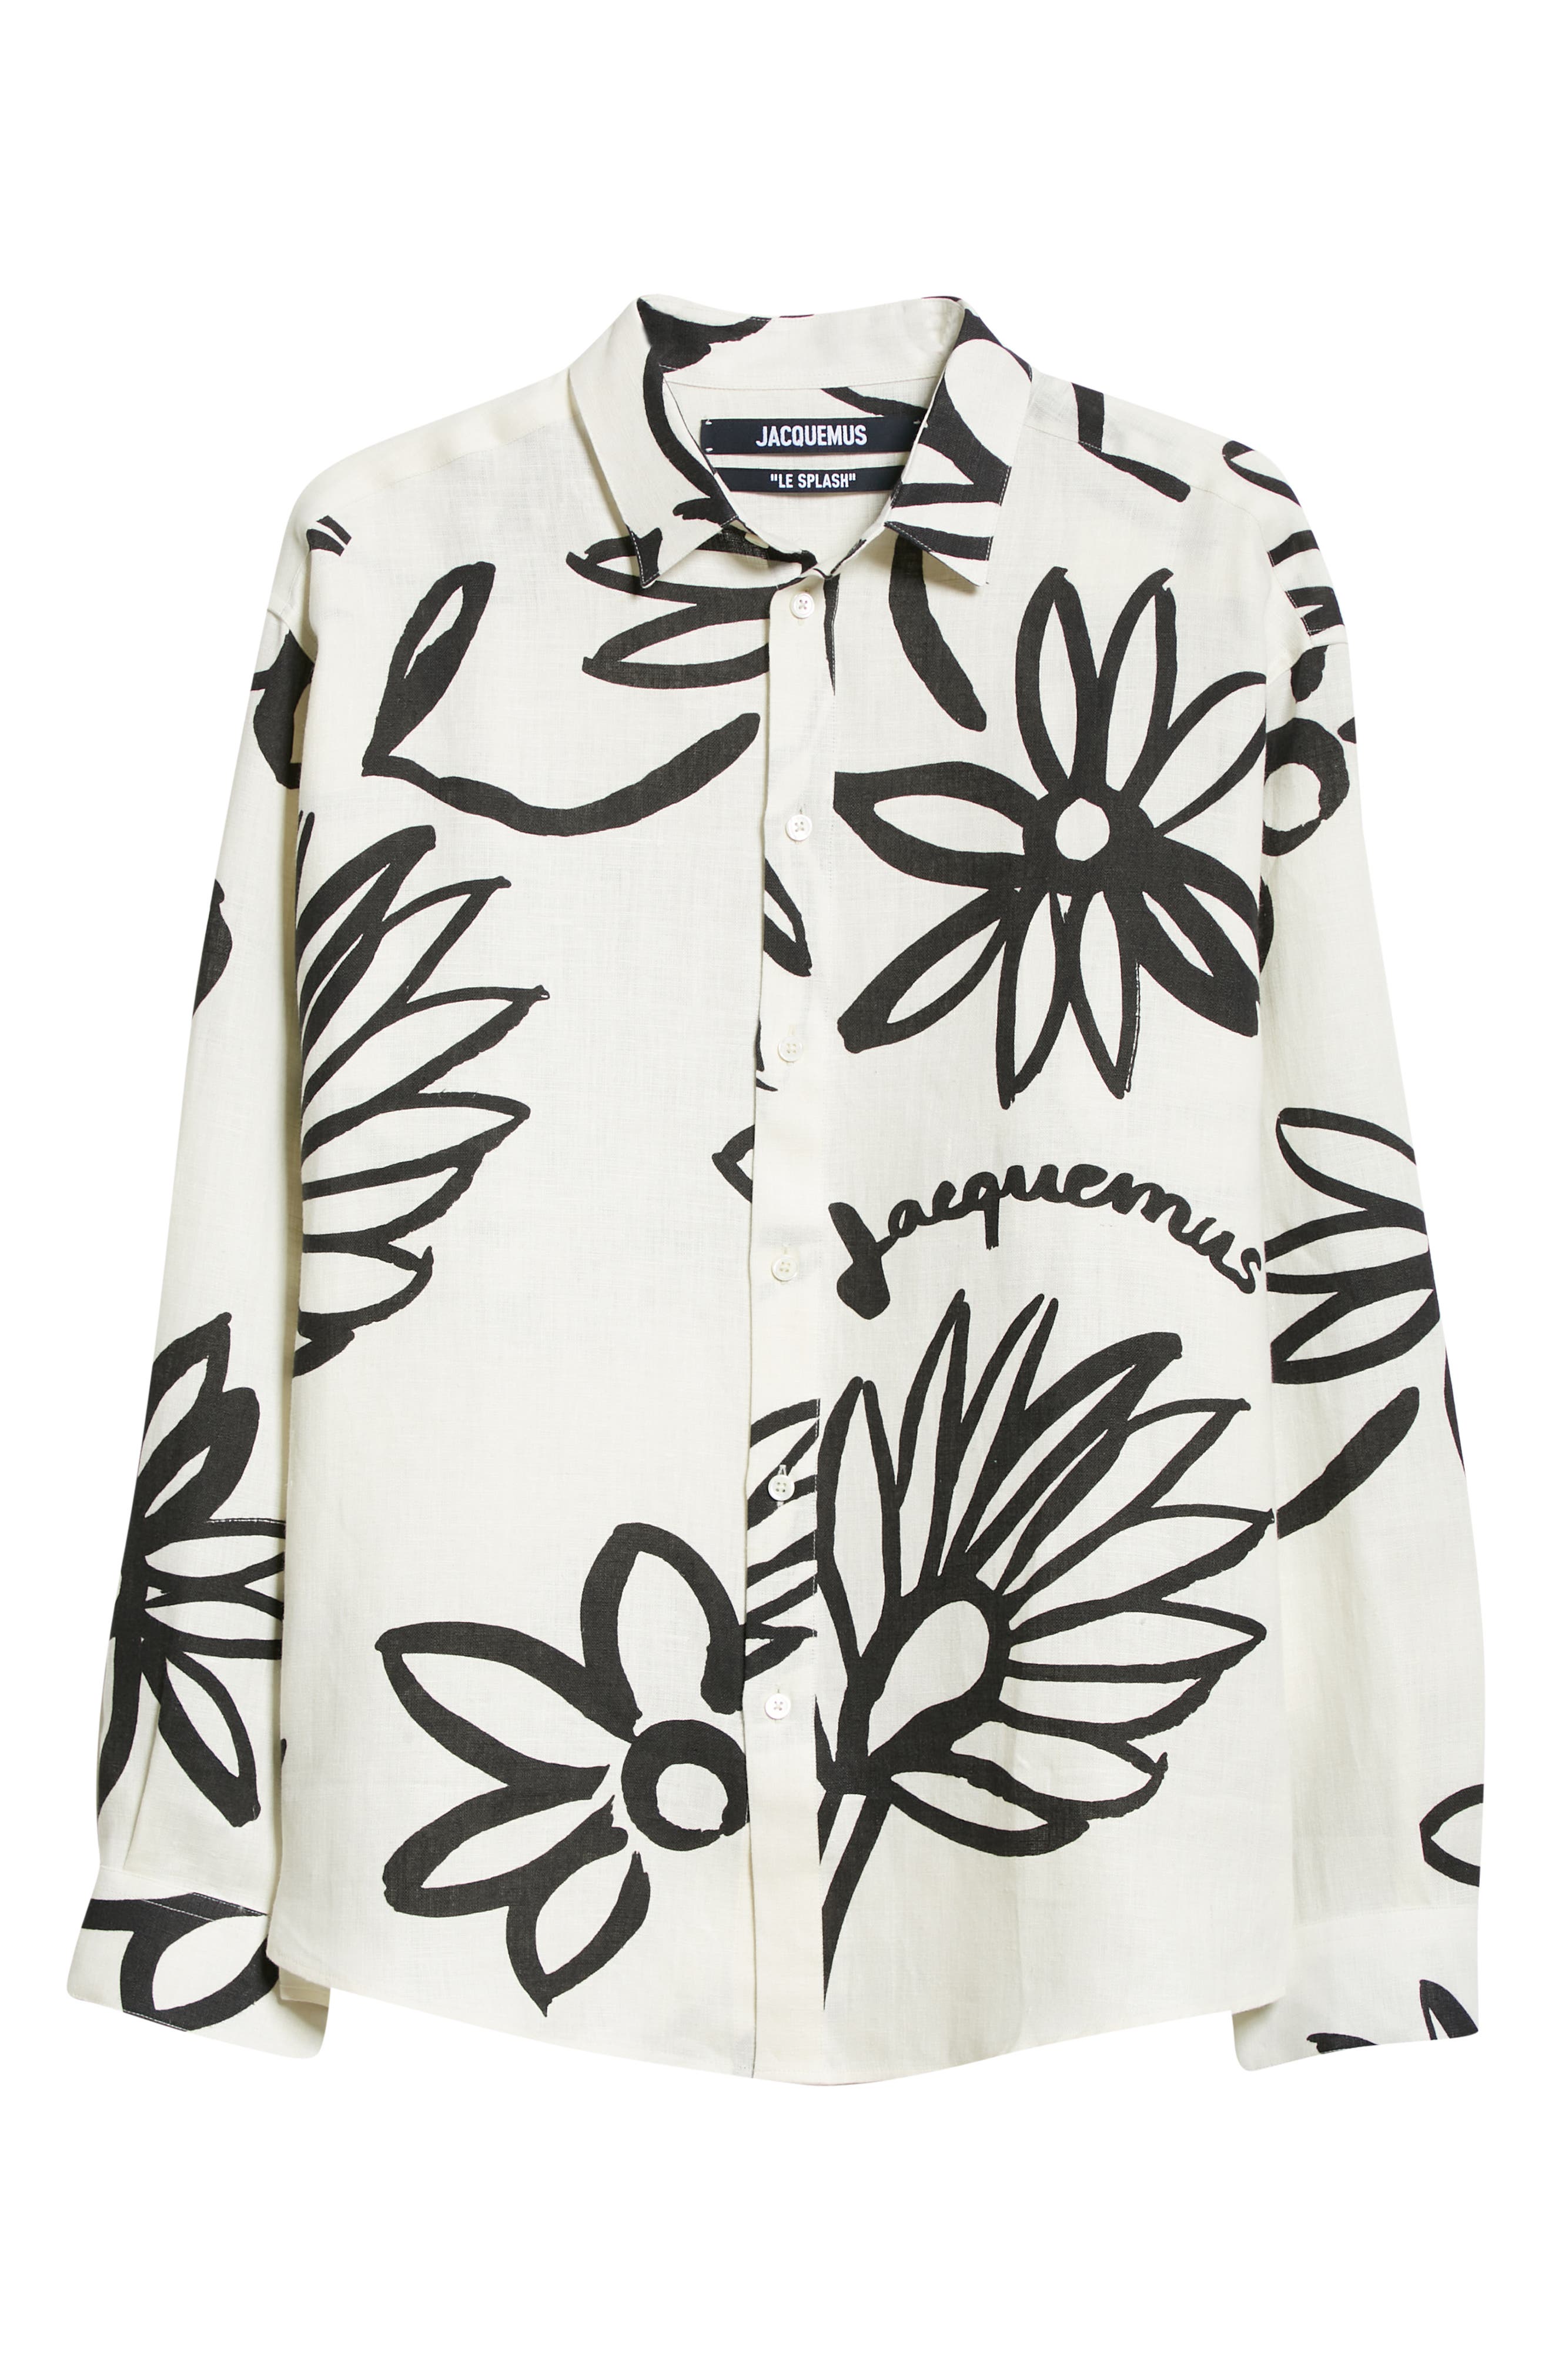 Jacquemus Men's La Chemise Simon Floral Print Linen Button-Up Shirt in Print Black/White Flowers at Nordstrom, Size 42 Us